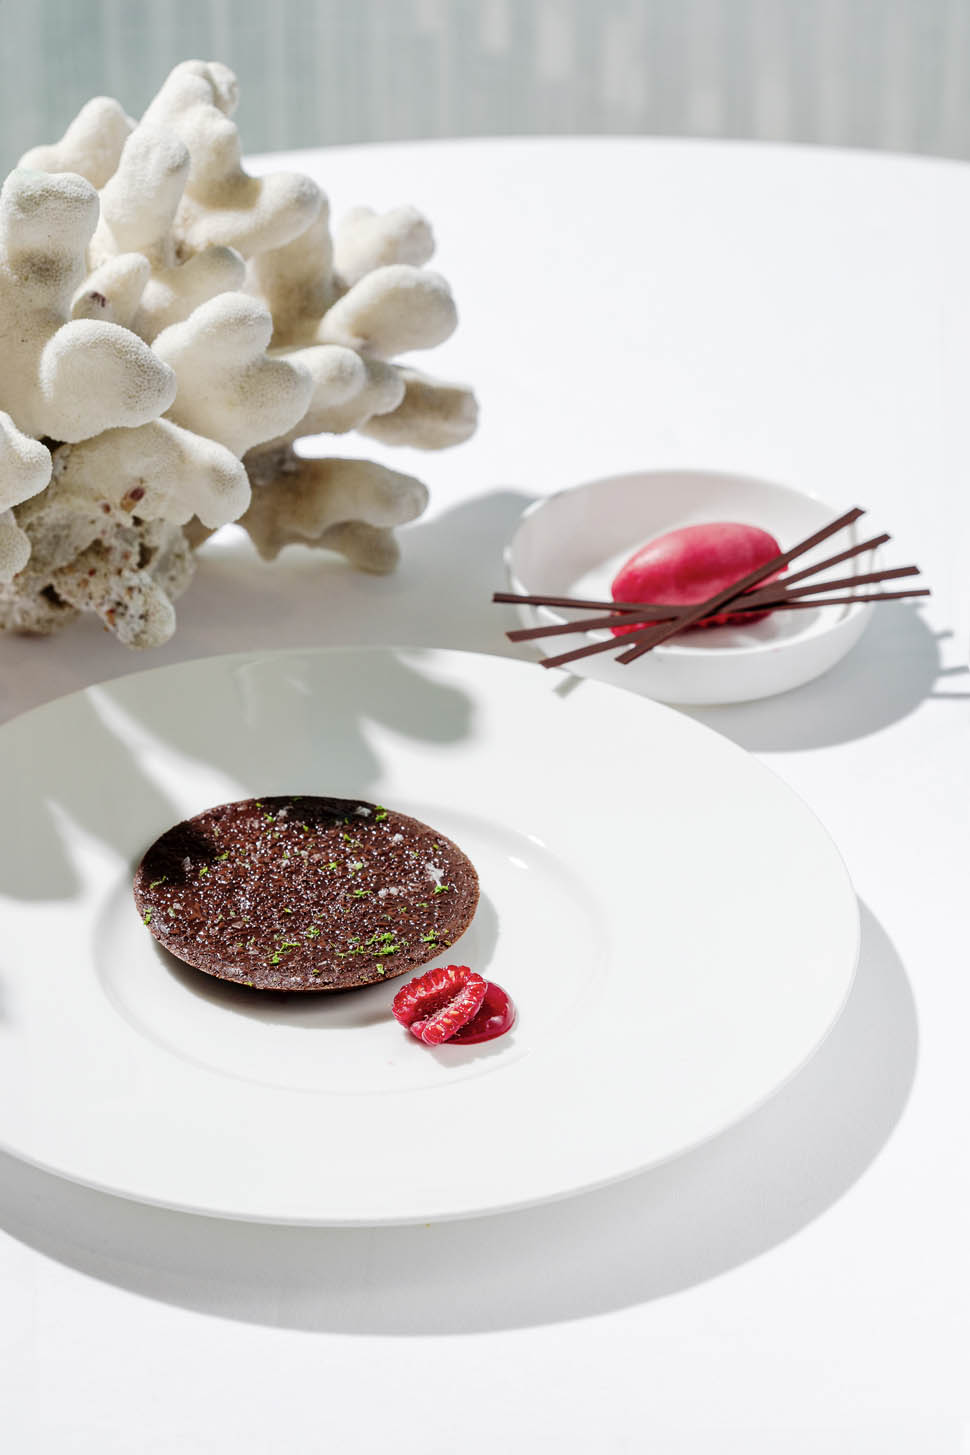 Gianfranco pascucci Crostatina al cioccolato e sorbetto di frutti rossi